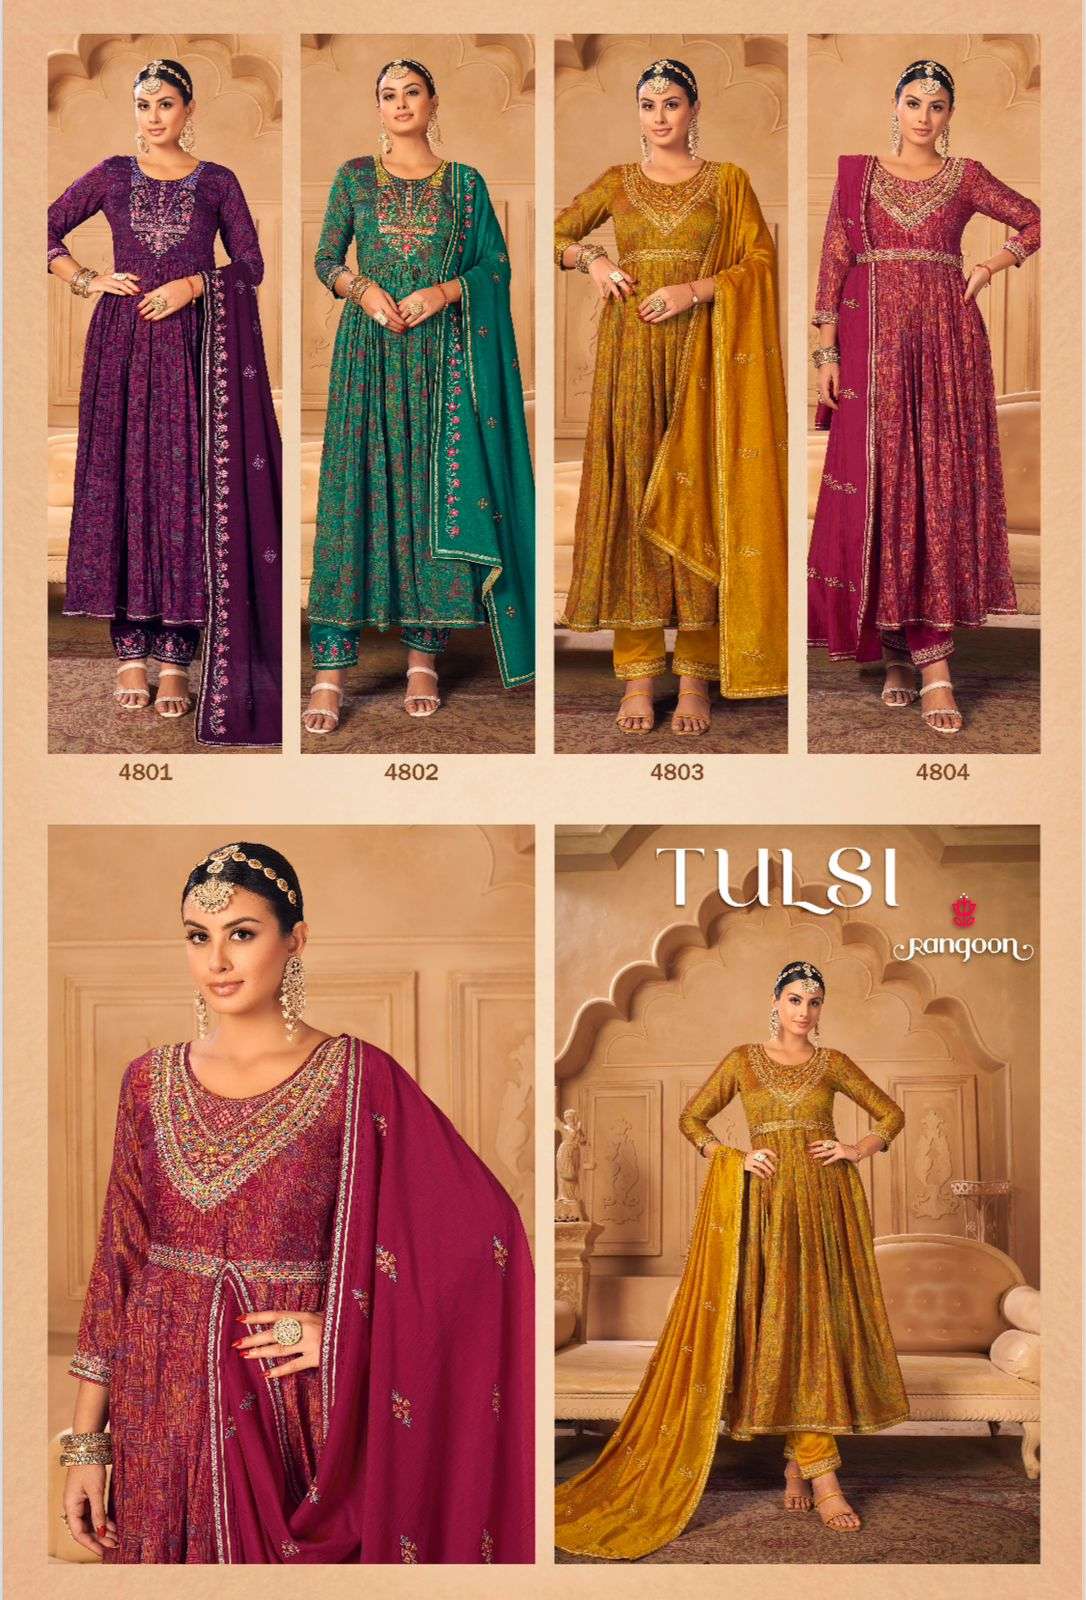 rangoon tulsi 4801-4804 series latest designer wear kurti wholesaler surat gujarat